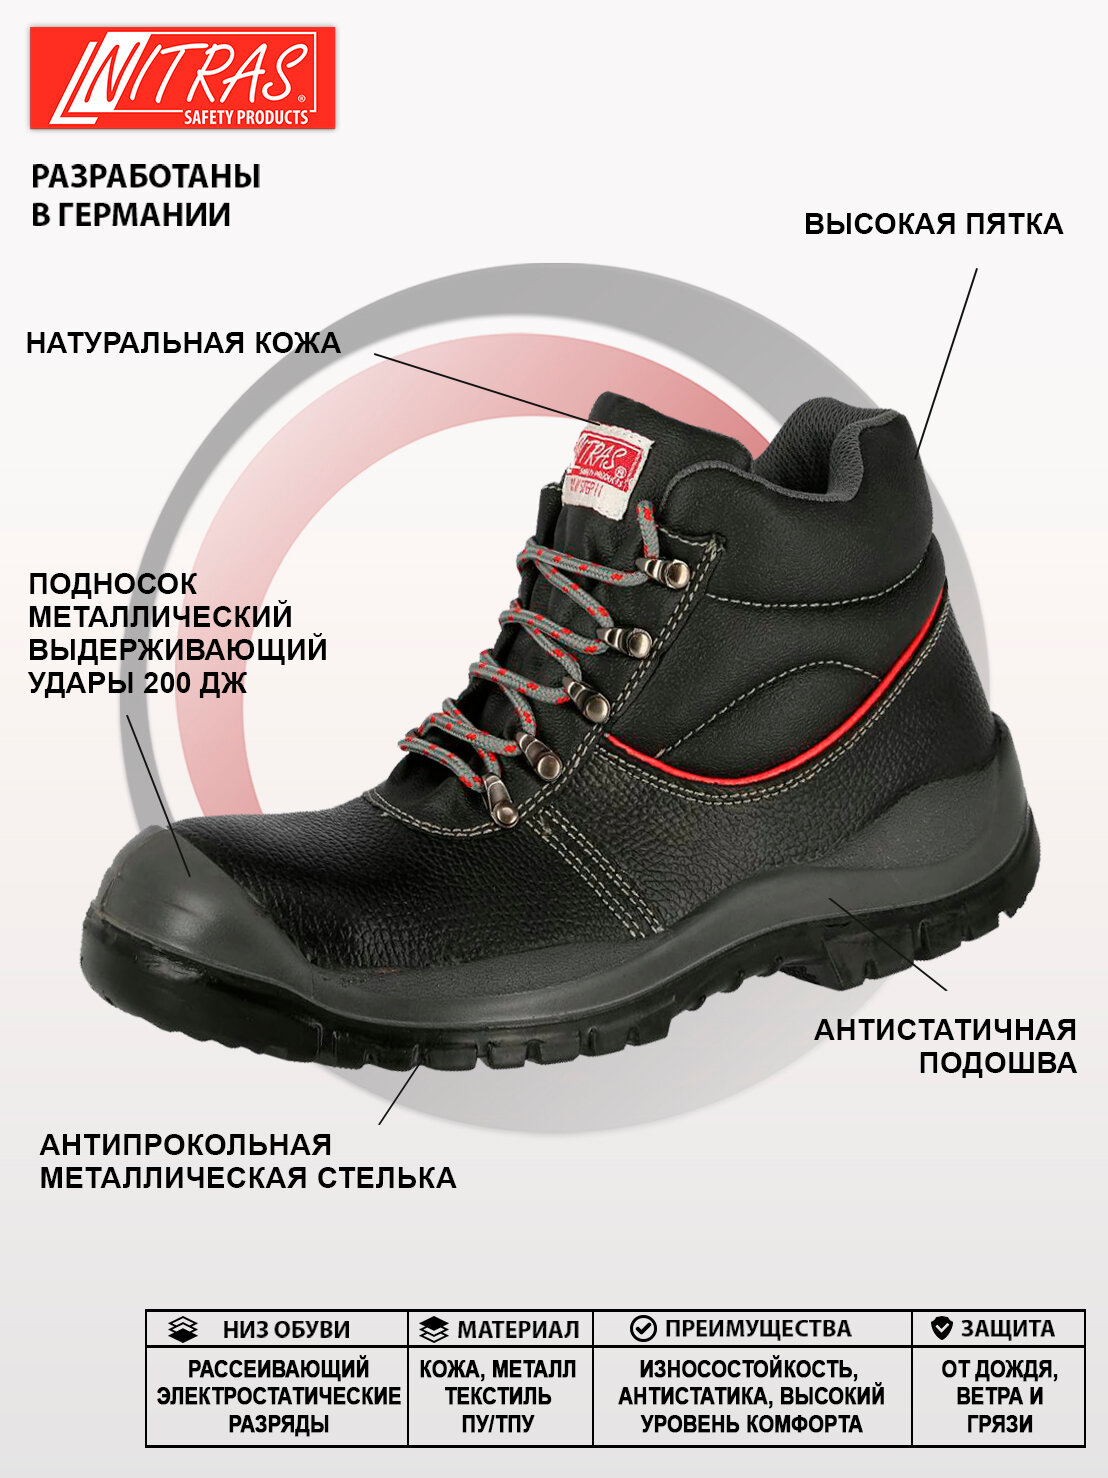 Защитные рабочие ботинки NITRAS 7201 натуральная кожа размер 46